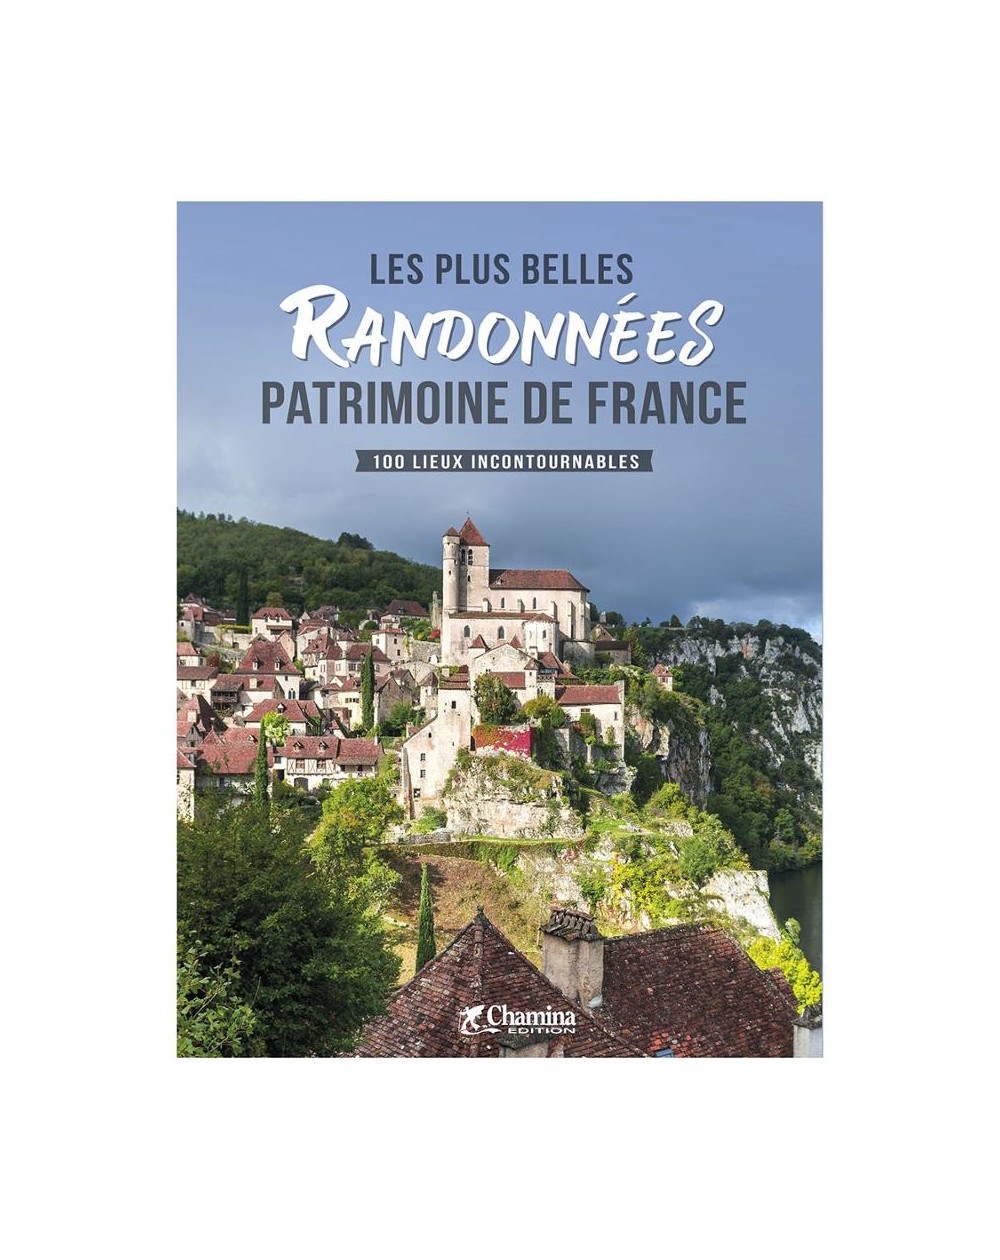 Découvrir le patrimoine de France en 100 randonnées - Chamina édition